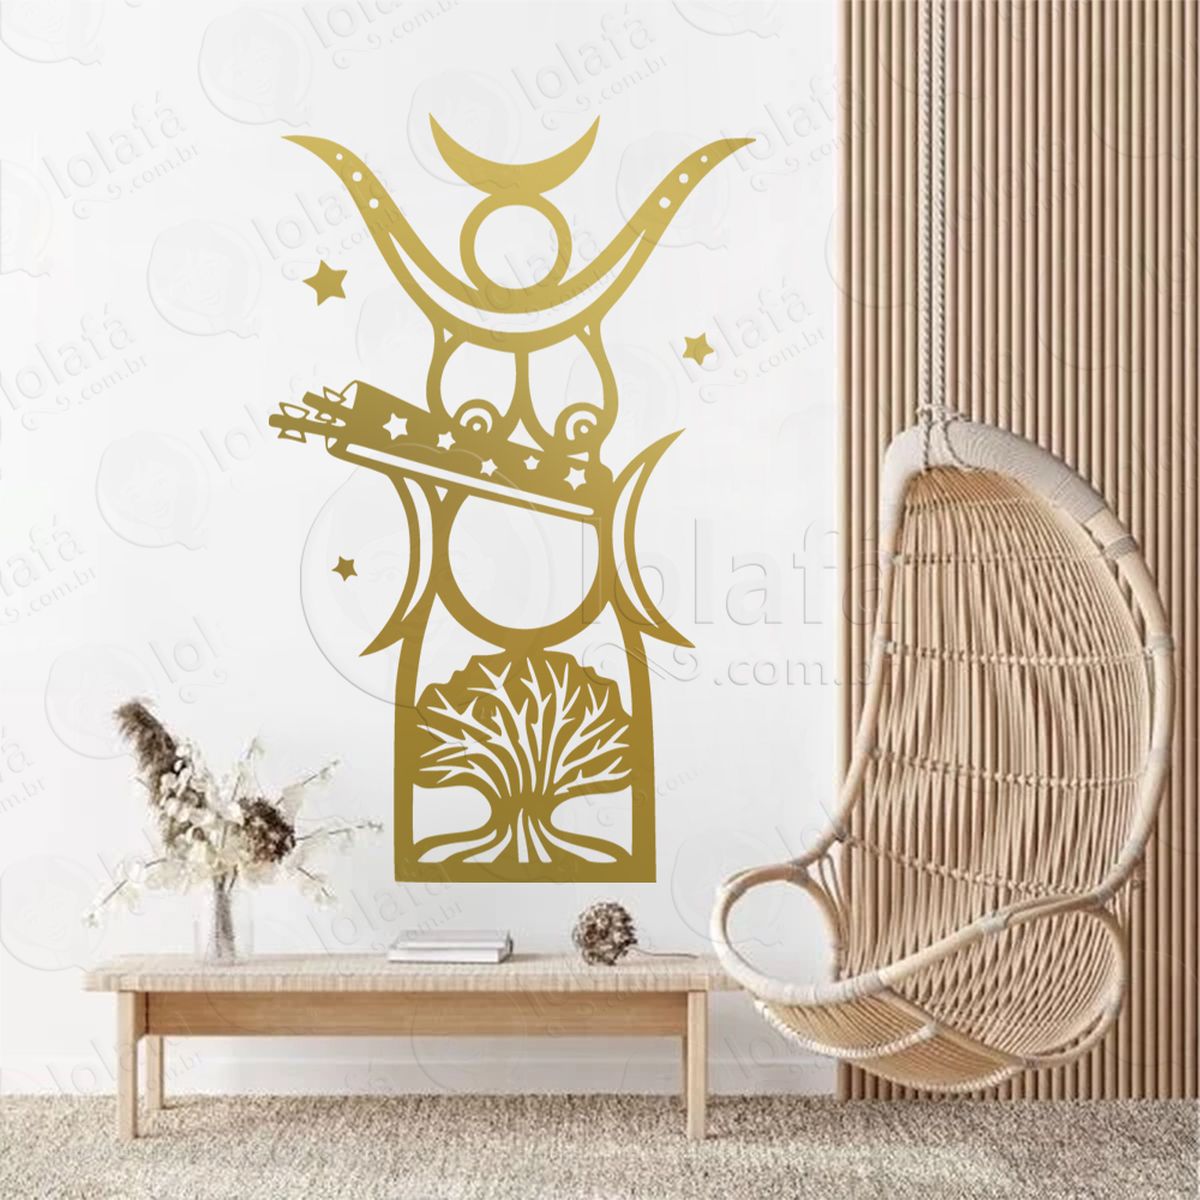 diana deusa da floresta goddess of the forest adesivo de parede decorativo para casa, sala, quarto, vidro e altar ocultista - mod:169